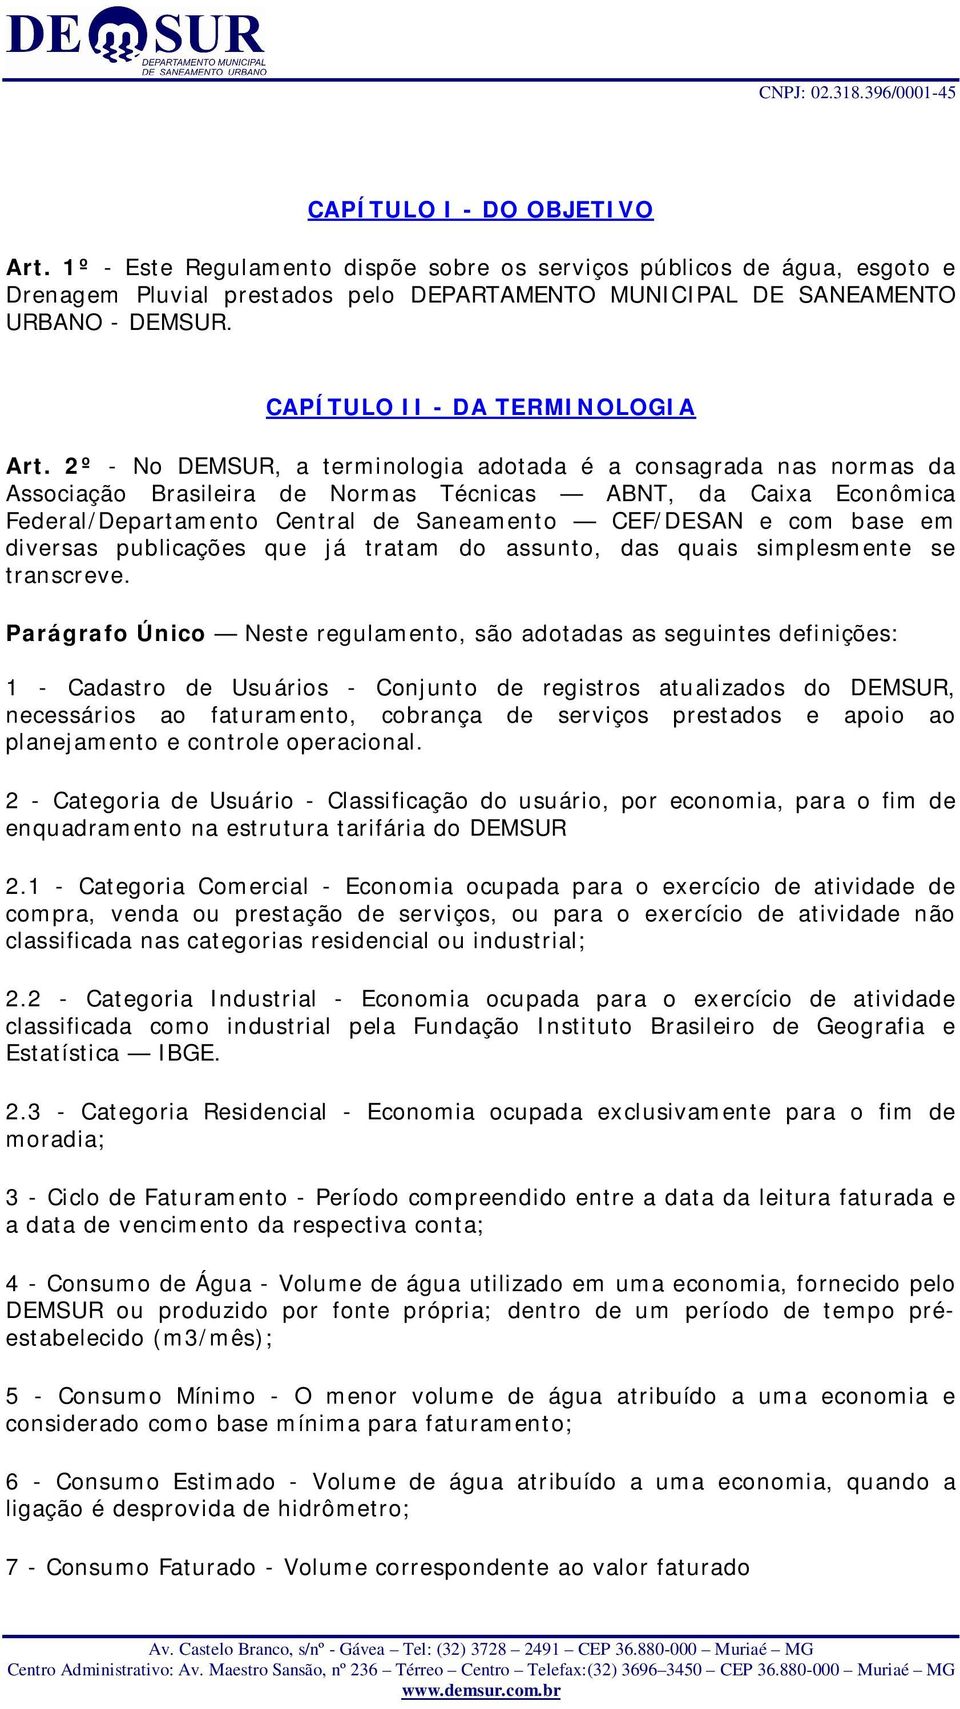 2º - No DEMSUR, a terminologia adotada é a consagrada nas normas da Associação Brasileira de Normas Técnicas ABNT, da Caixa Econômica Federal/Departamento Central de Saneamento CEF/DESAN e com base